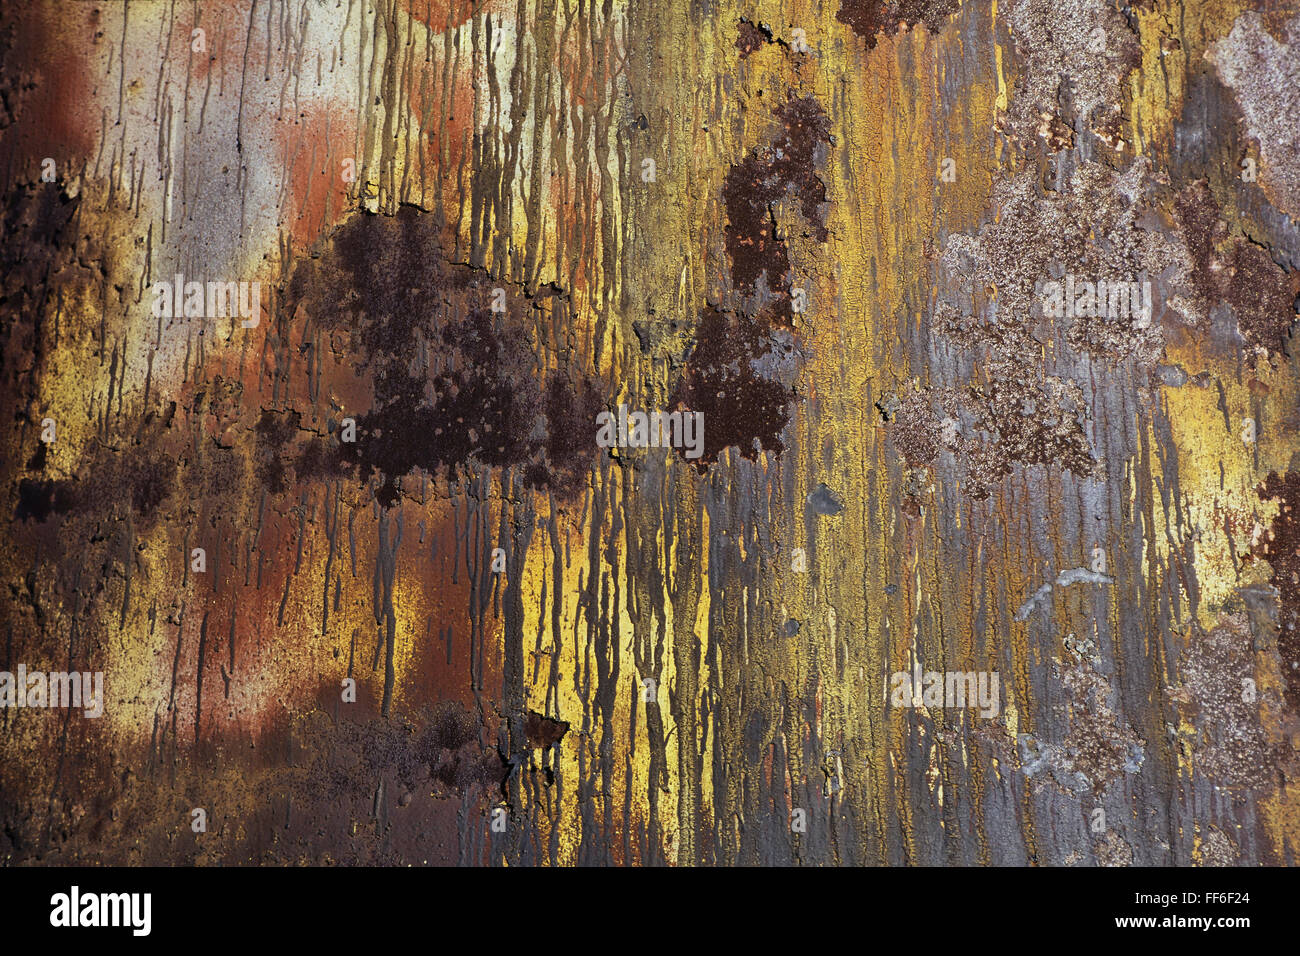 Una pared con gotas de pintura y marcas y manchas de óxido en el metal. Foto de stock